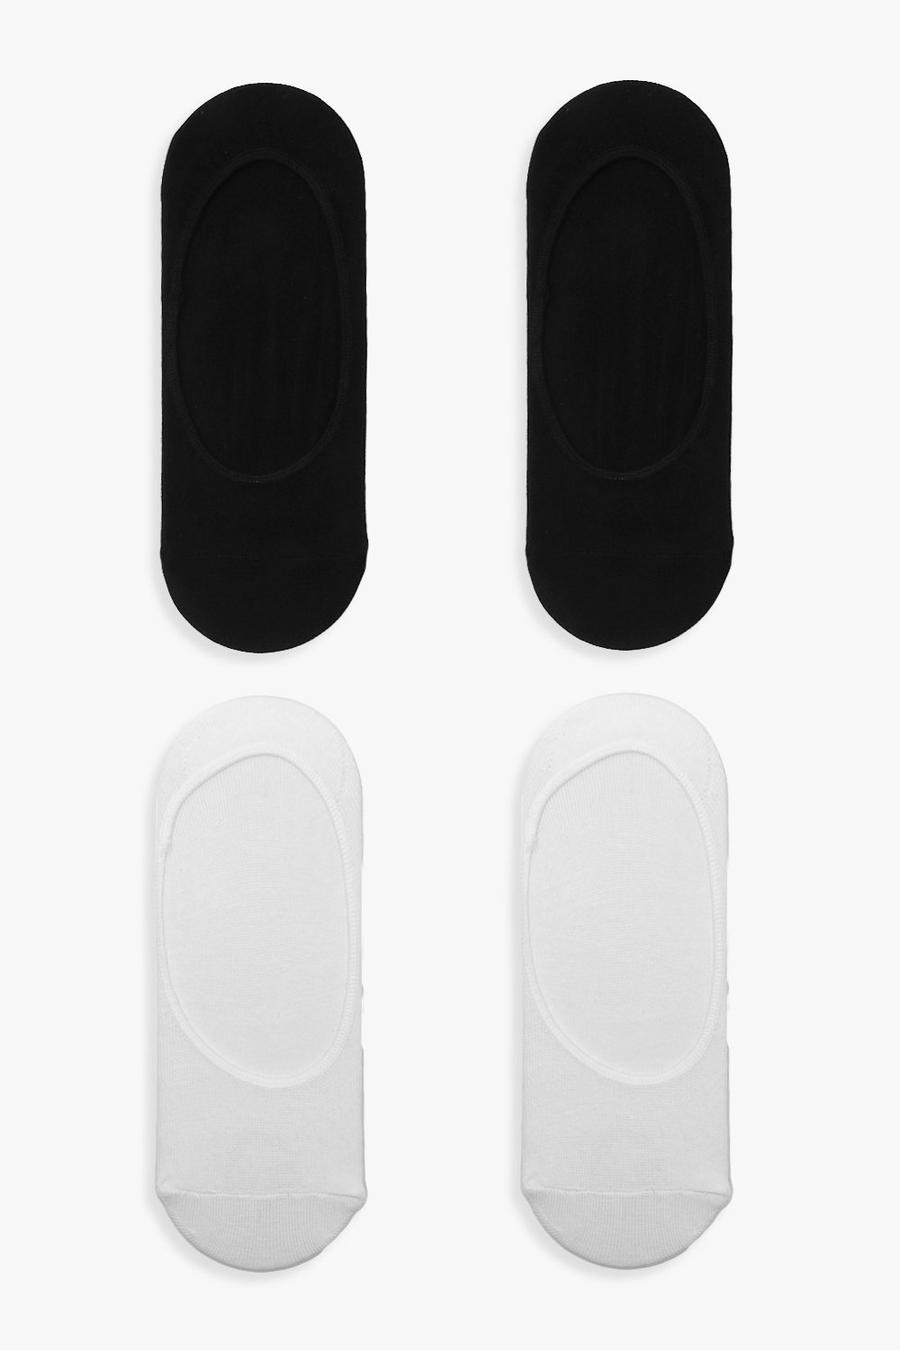 Calzini invisibili in bianco e nero - set di 4 paia, Multi image number 1